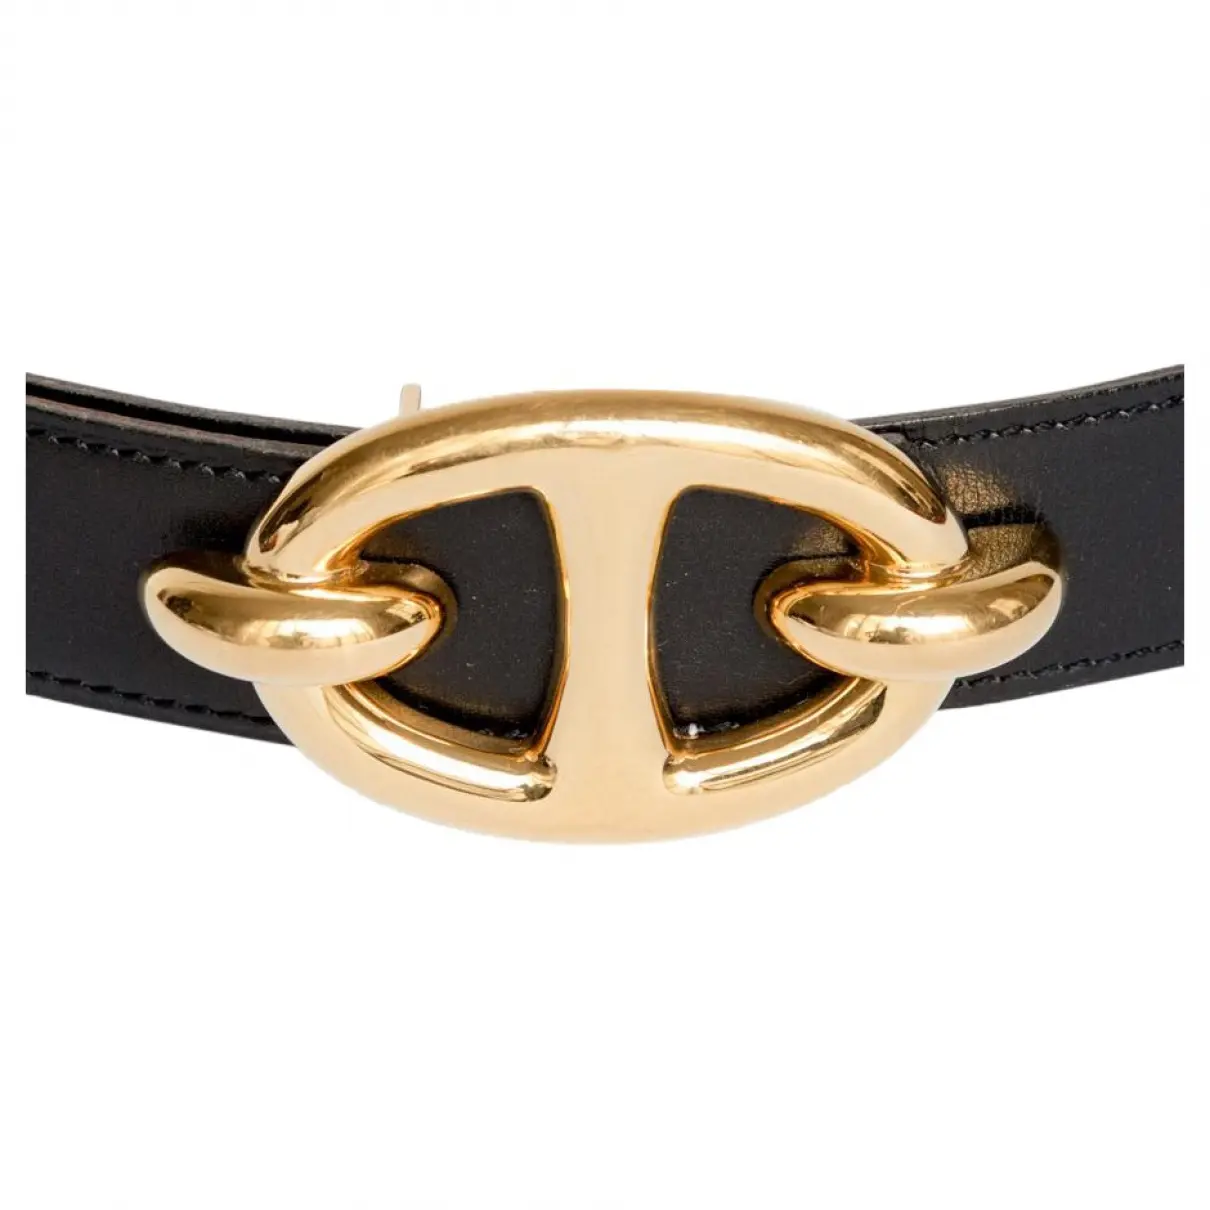 Hermès Gold Leather Belt for sale - Vintage